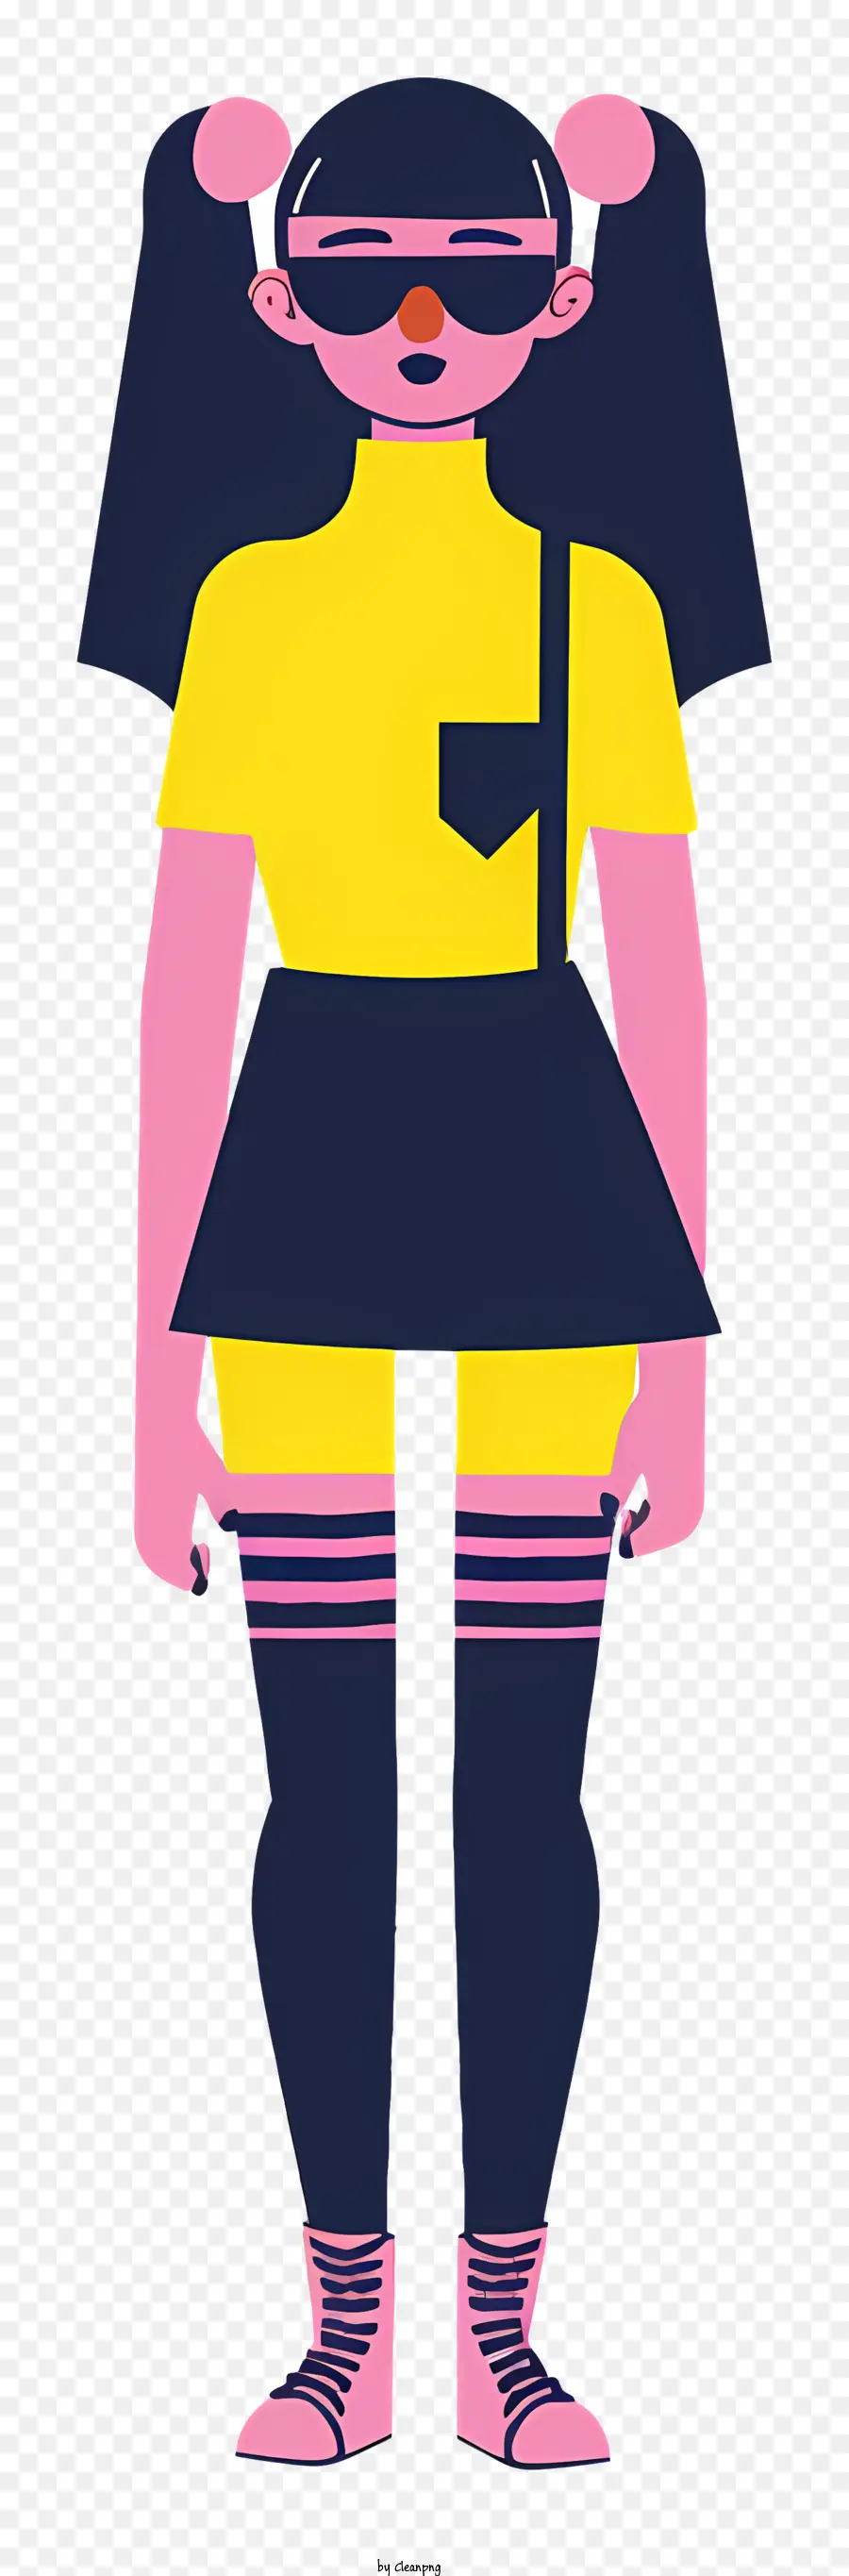 nhân vật hoạt hình thời trang nhân vật màu vàng và màu hồng trang phục tập trung tóc dài - Nhân vật hoạt hình trong trang phục màu vàng và hồng